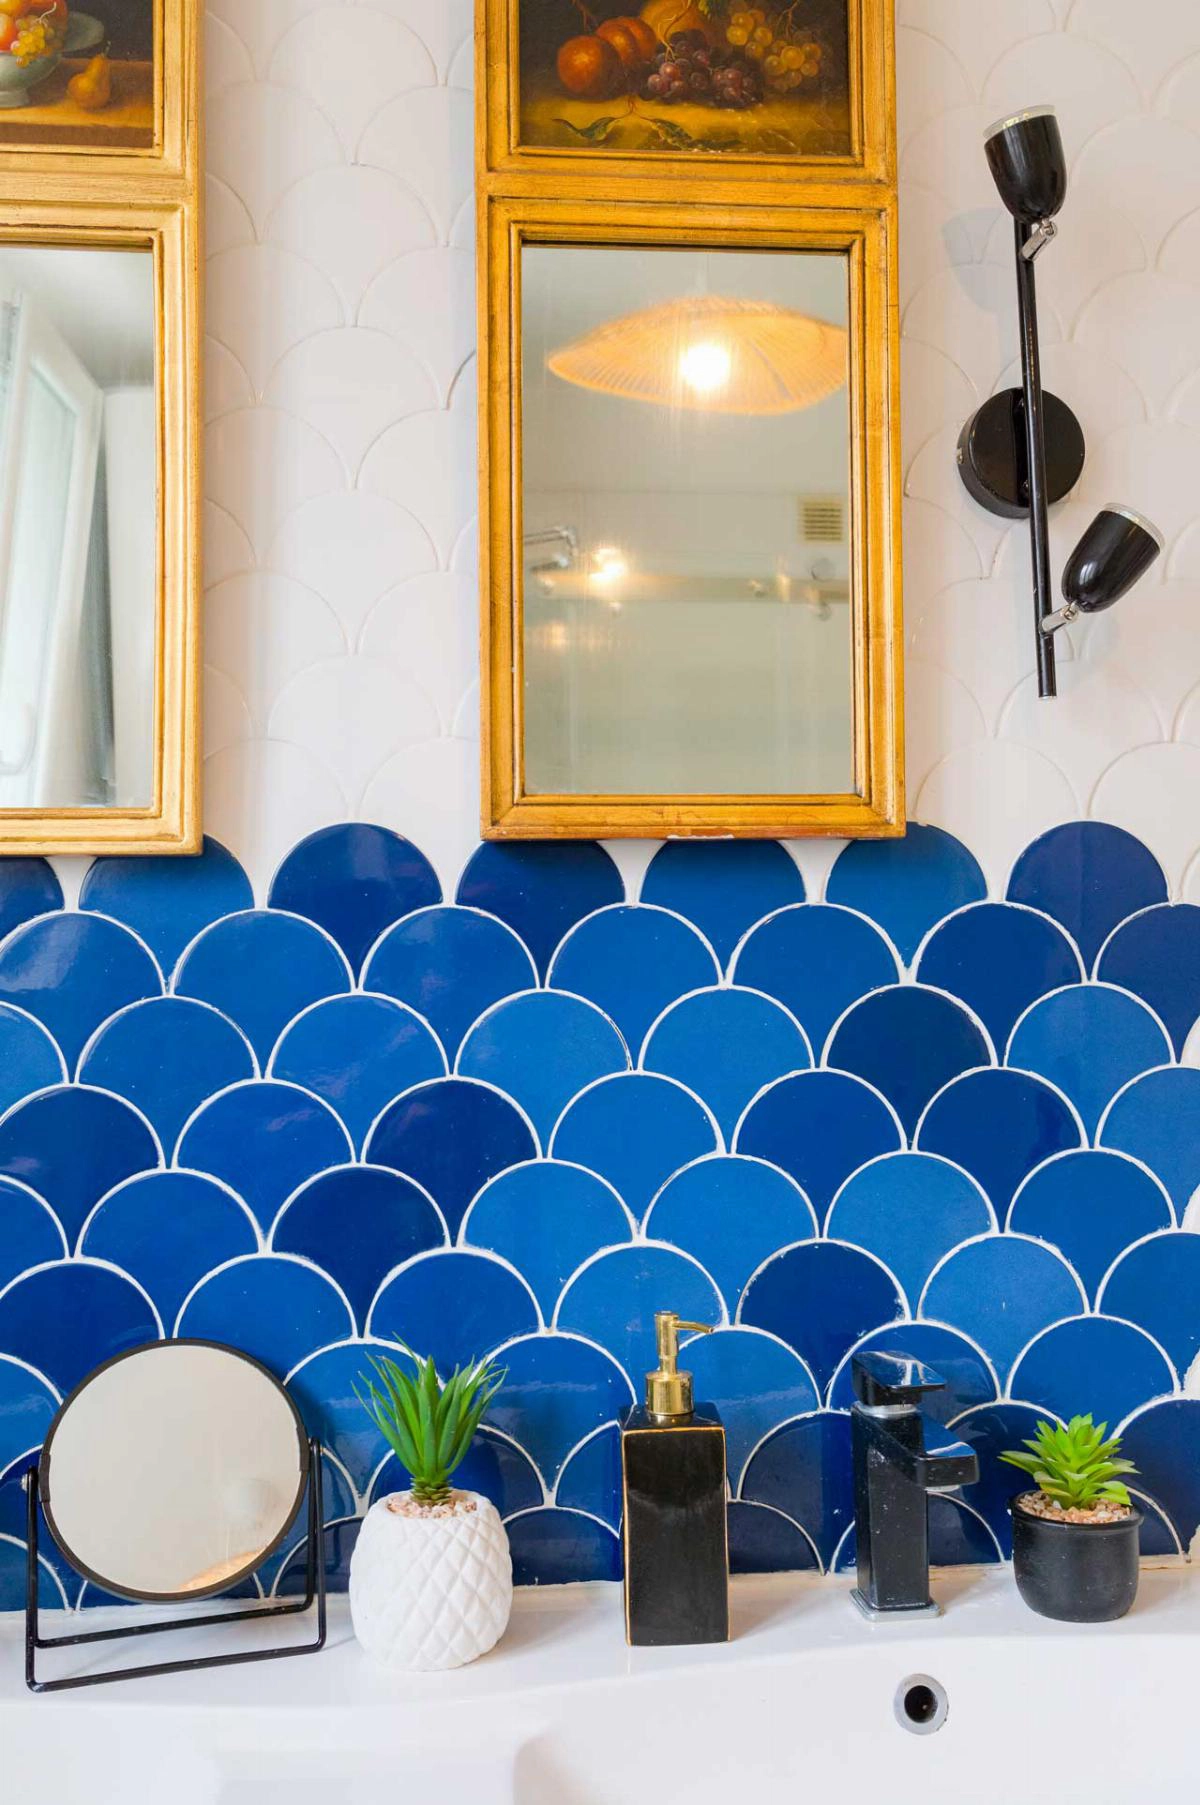 Salle de bains des années 70, métamorphosée grâce à sa touche de bleu.